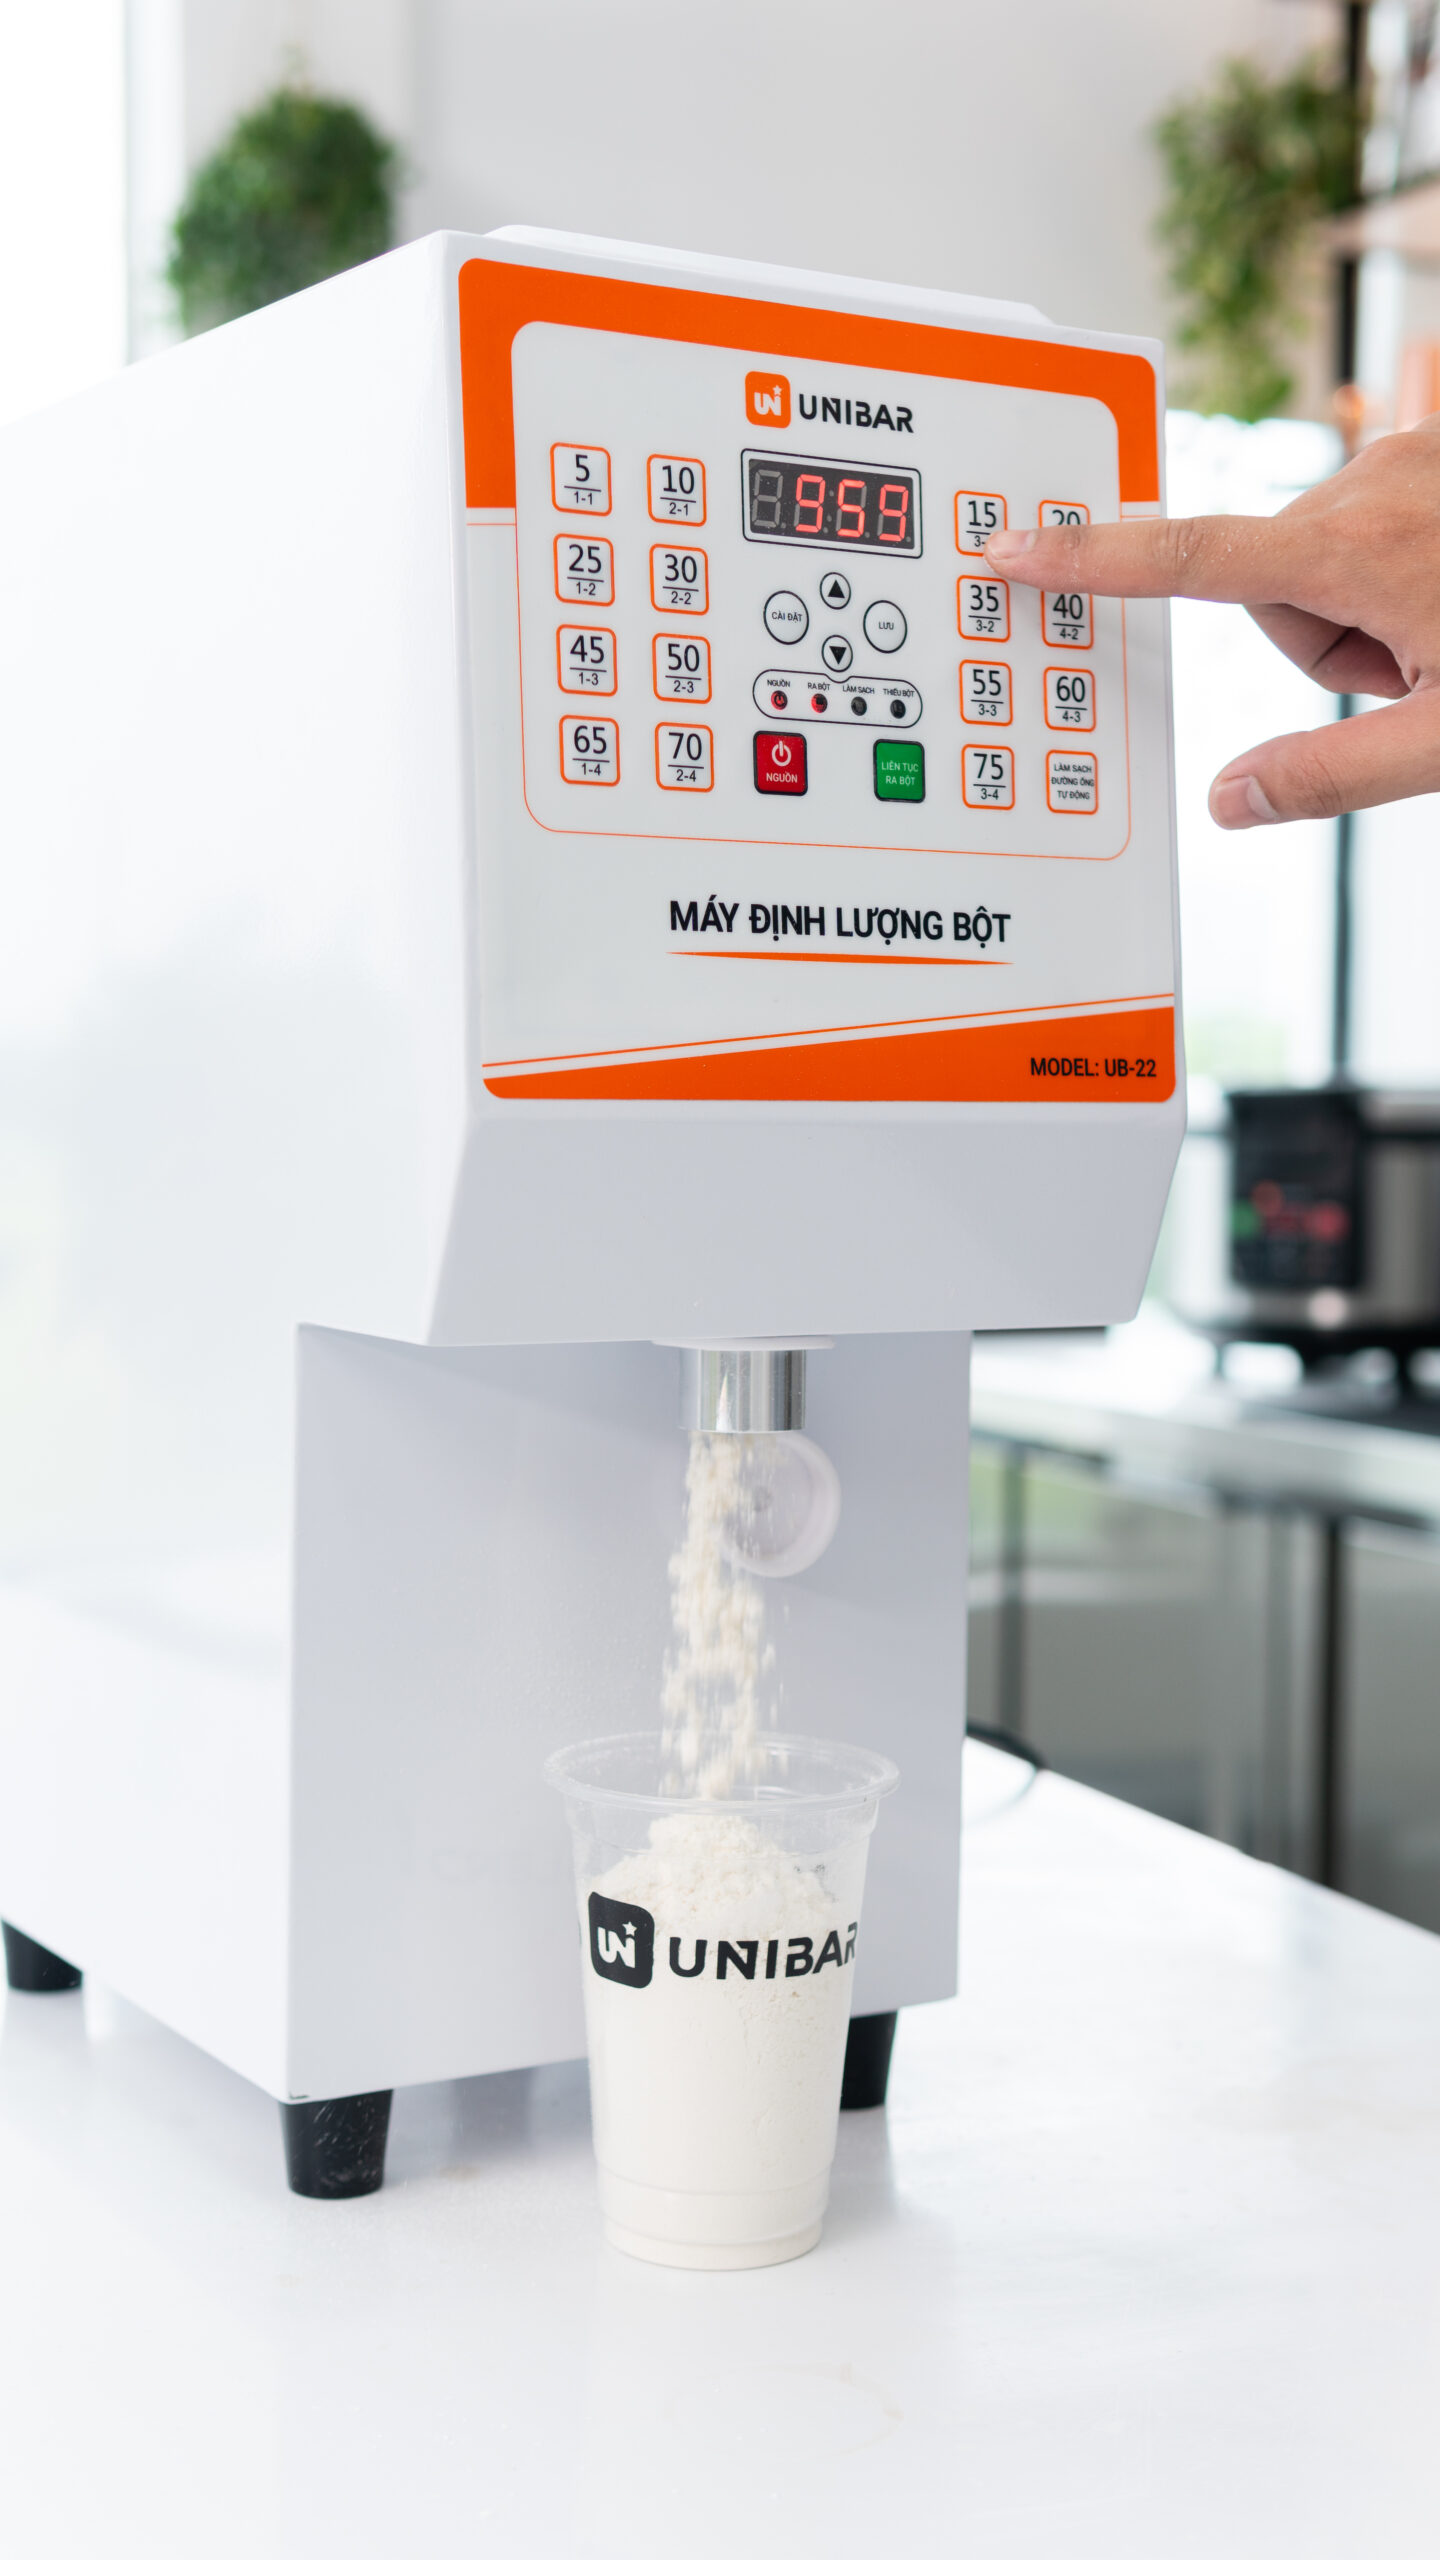 Máy định lượng bột Unibar UB-22